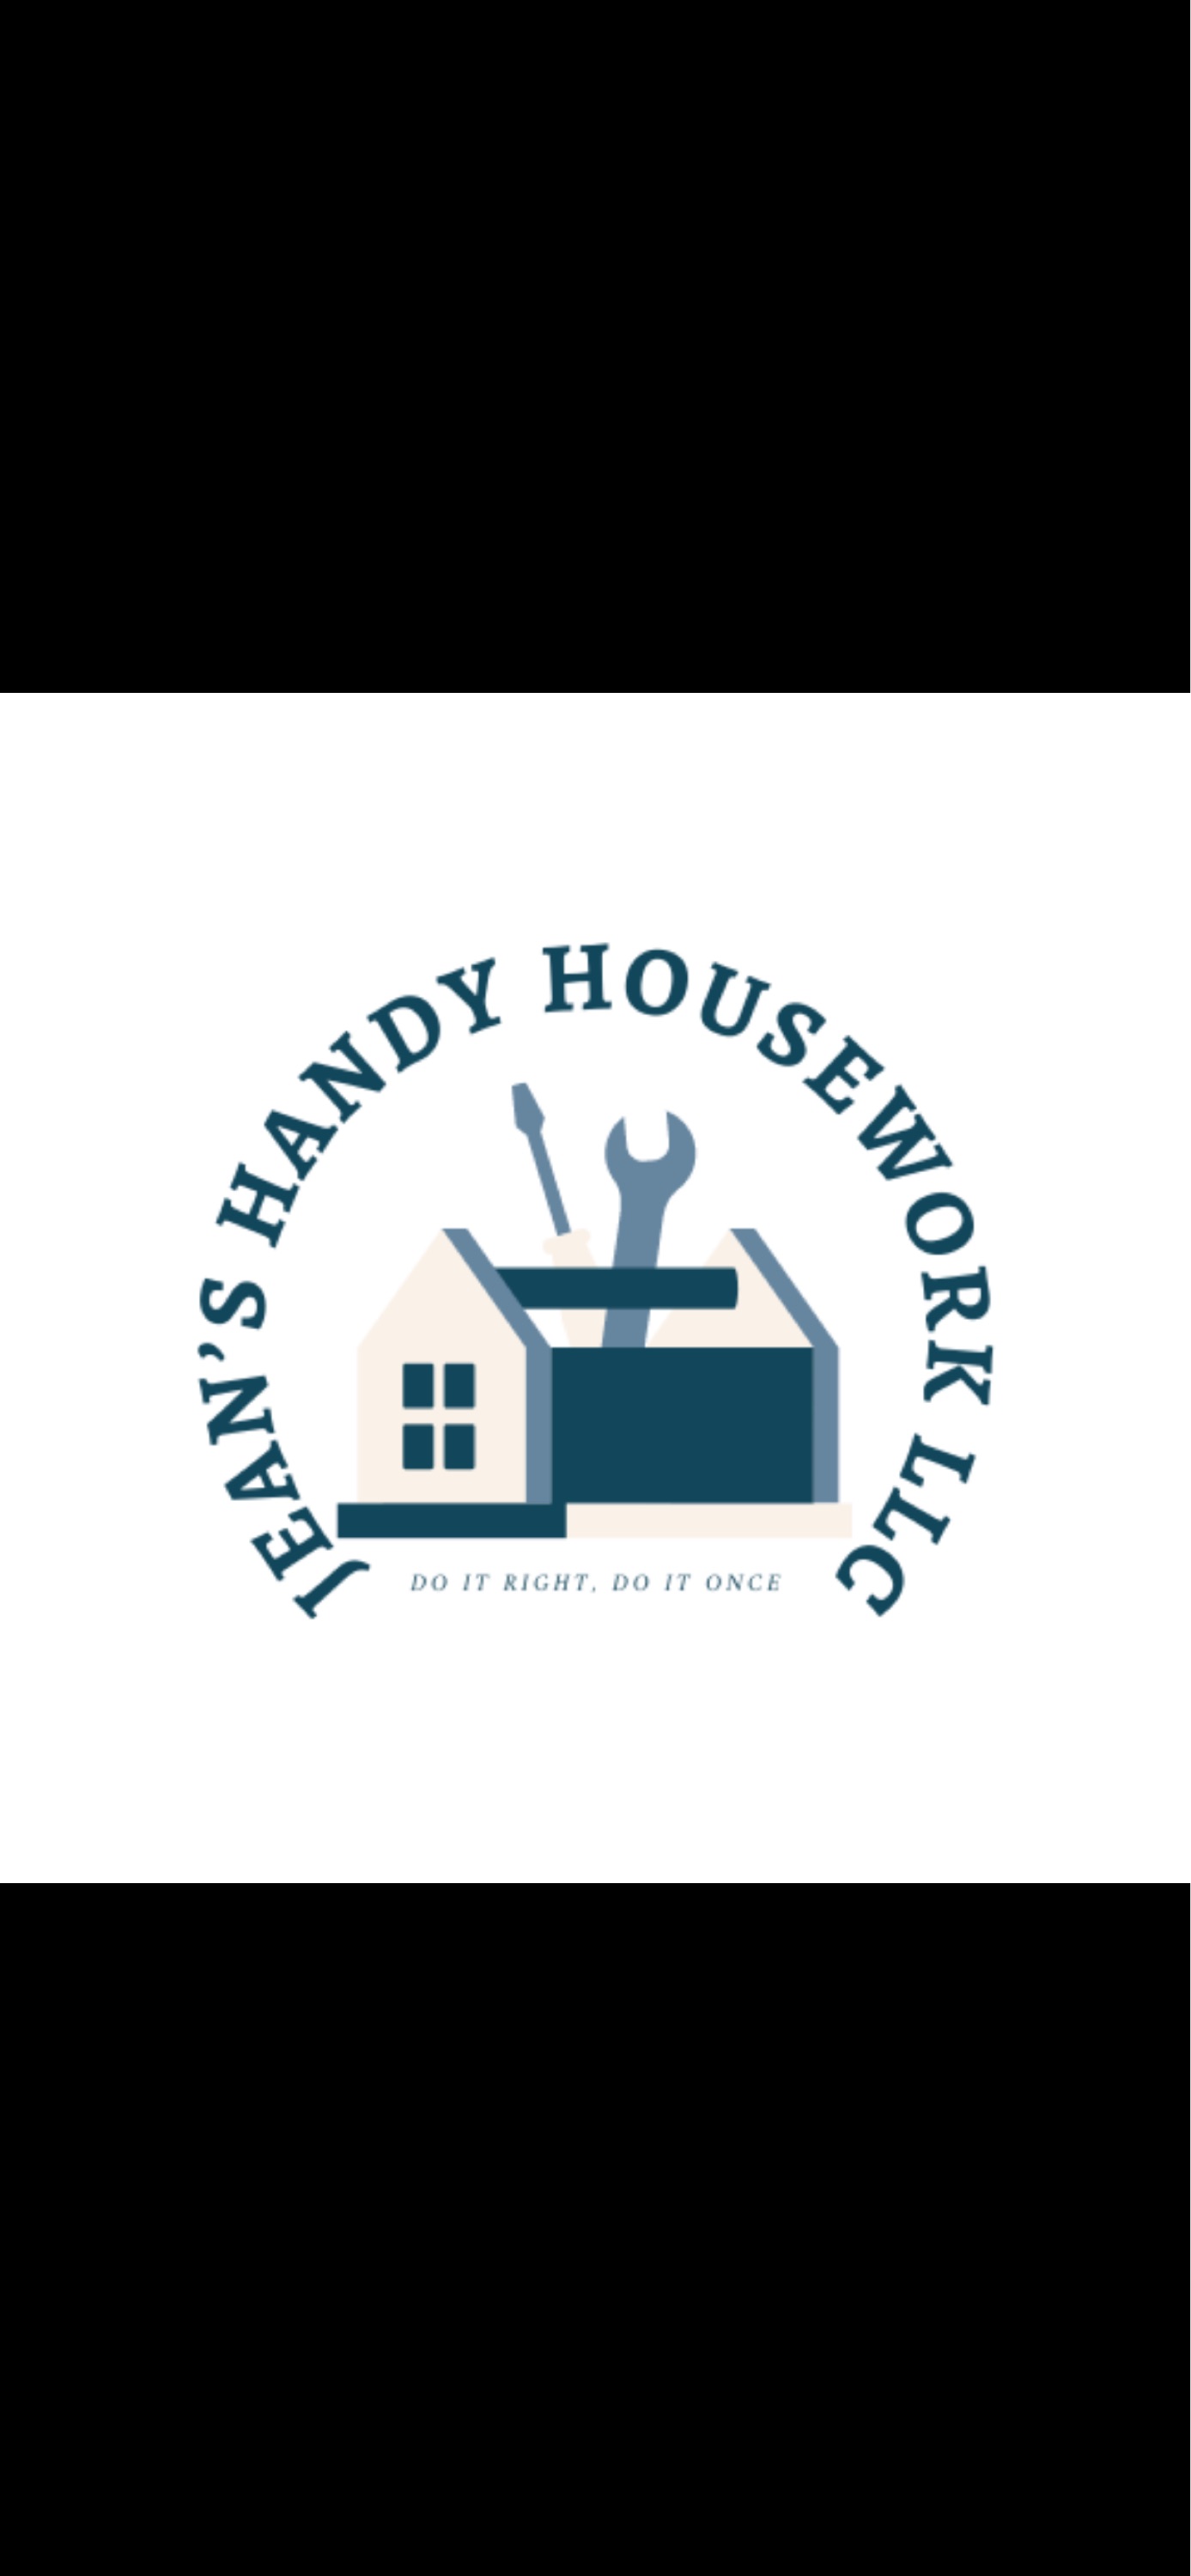 Jean's Handy Housework, LLC Logo